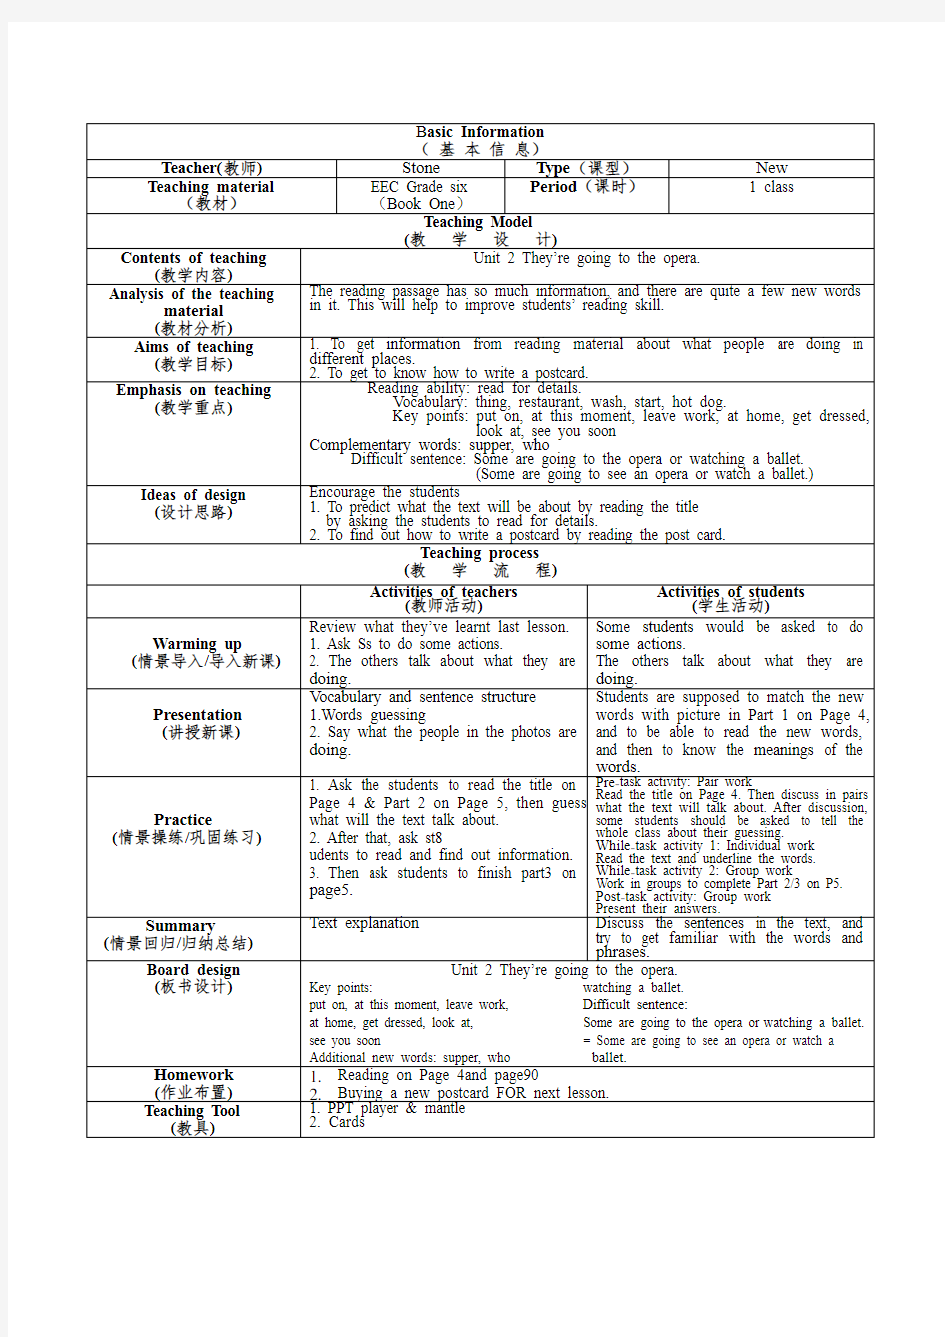 中英对照初中英语教案模板(2015版,含全英内容)